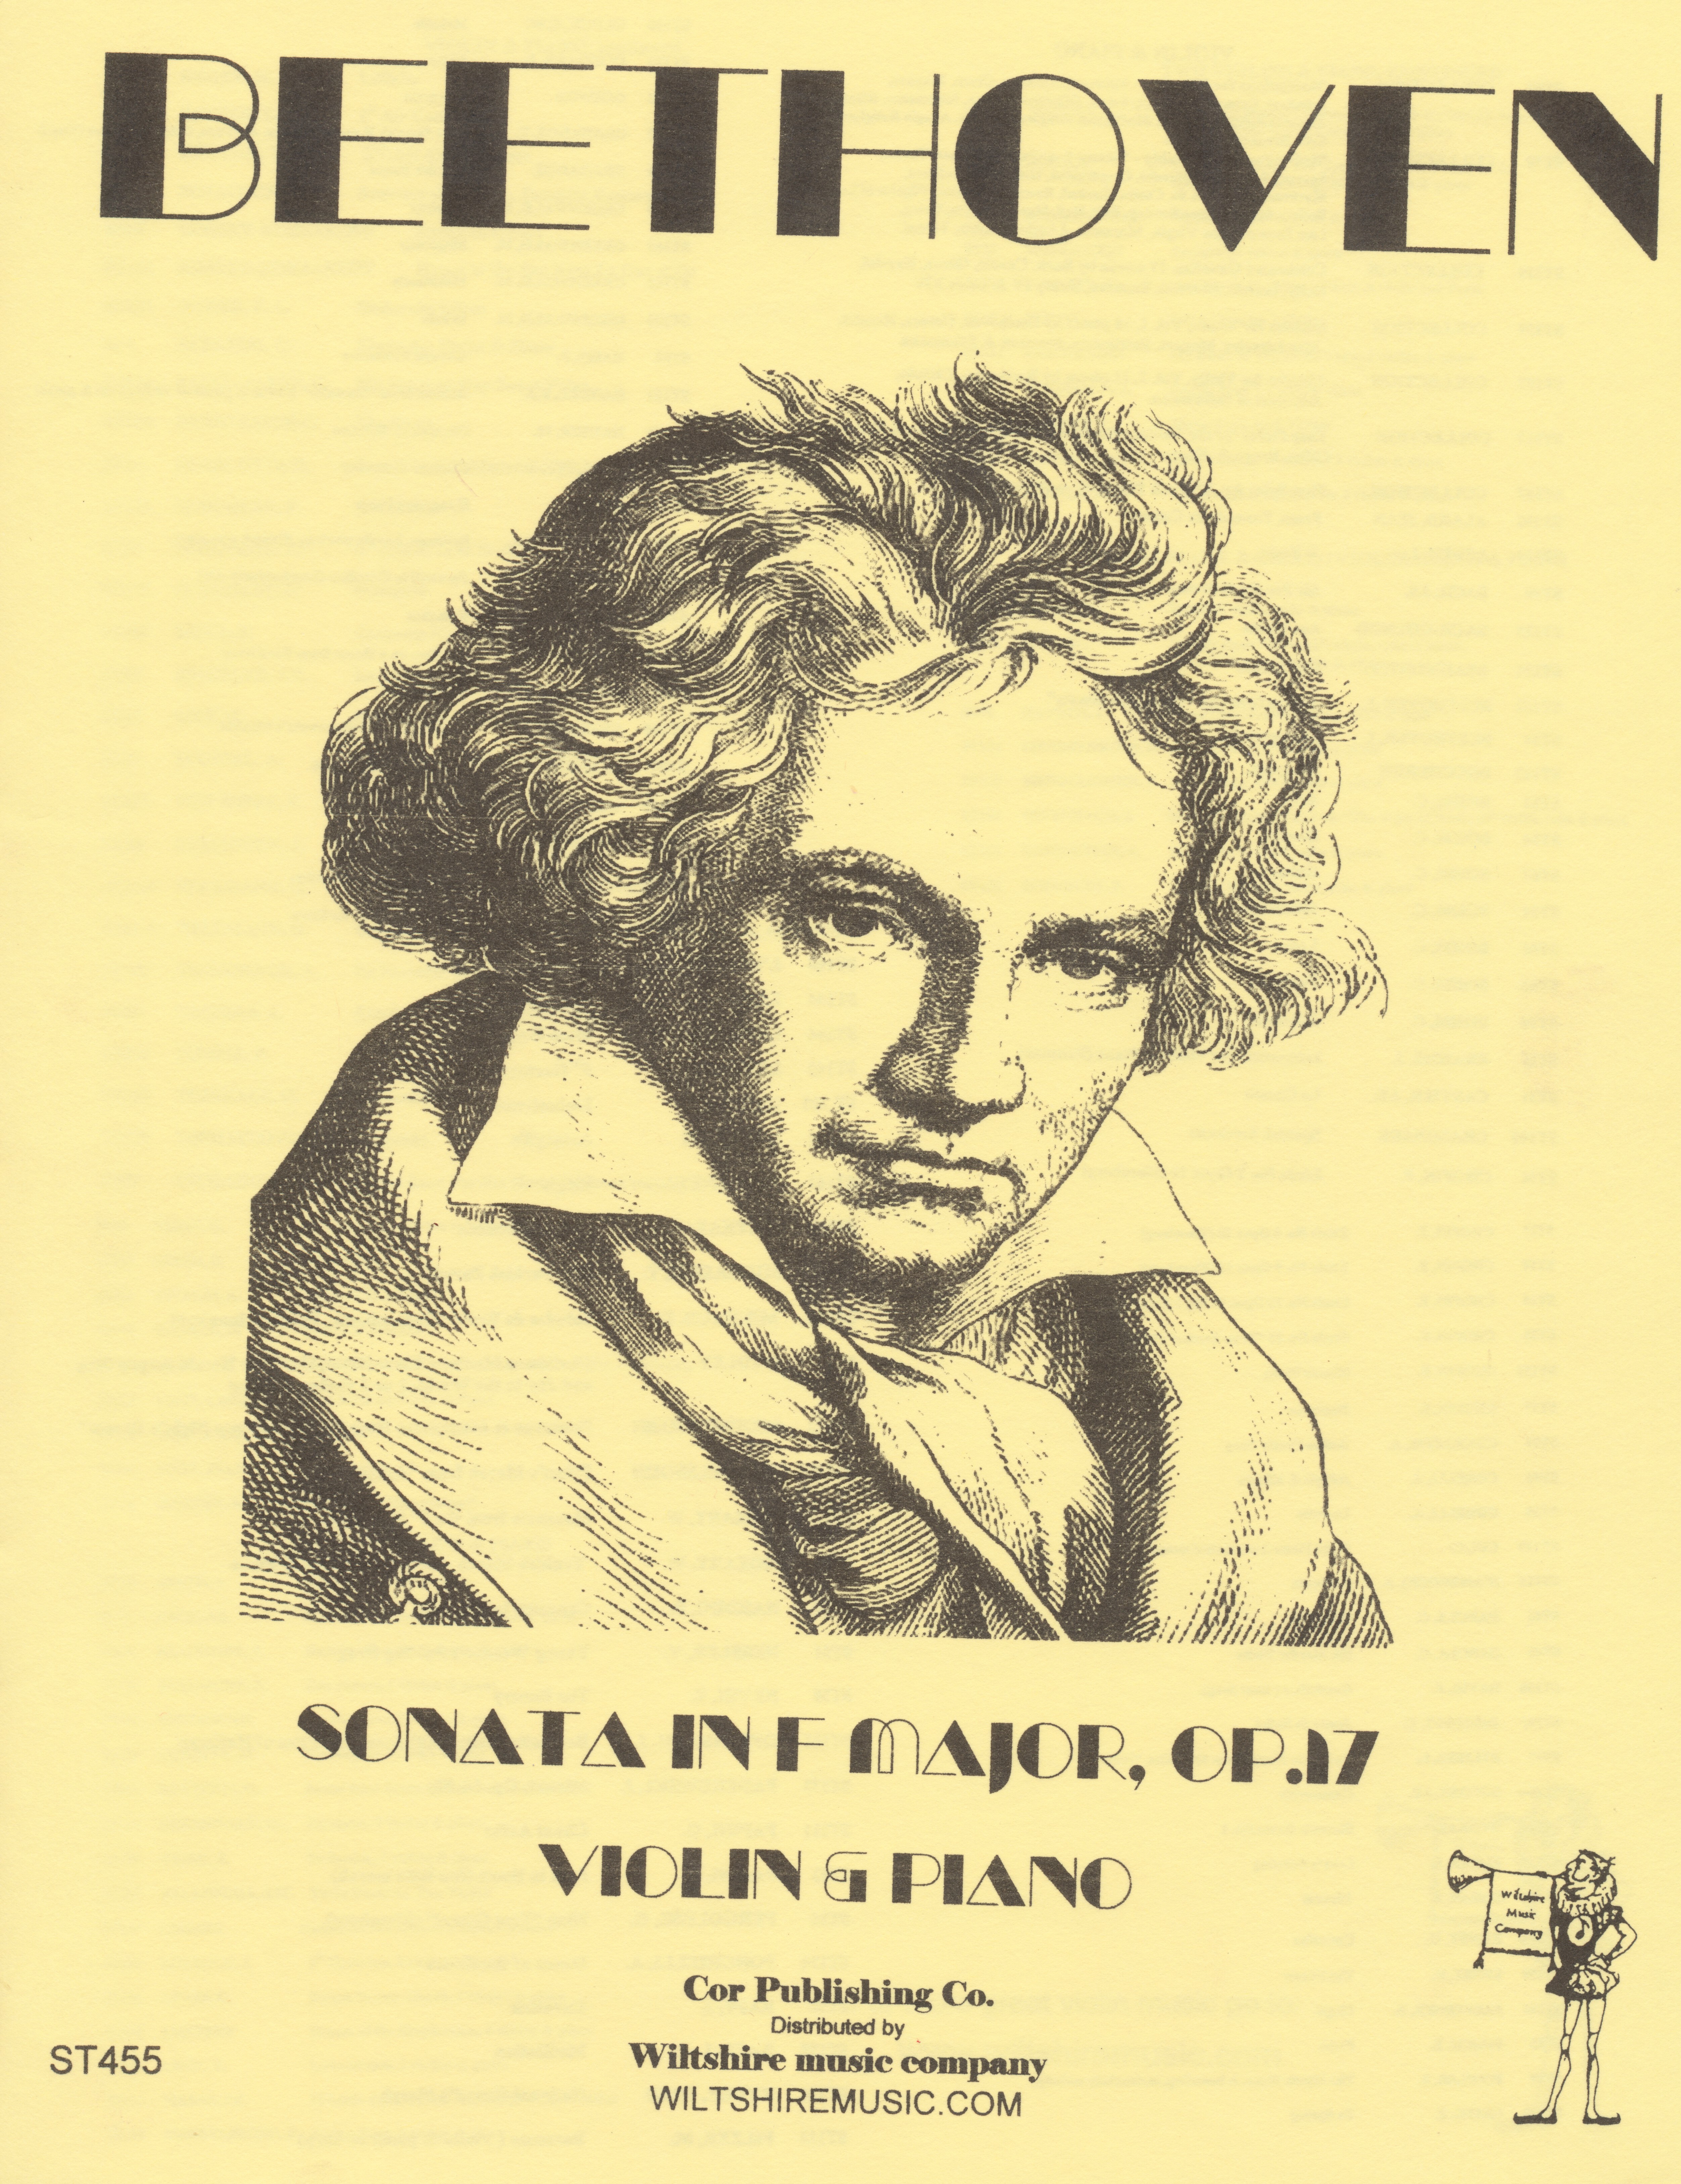 Sonata in F Major, Op.17, Beethoven, violin & piano